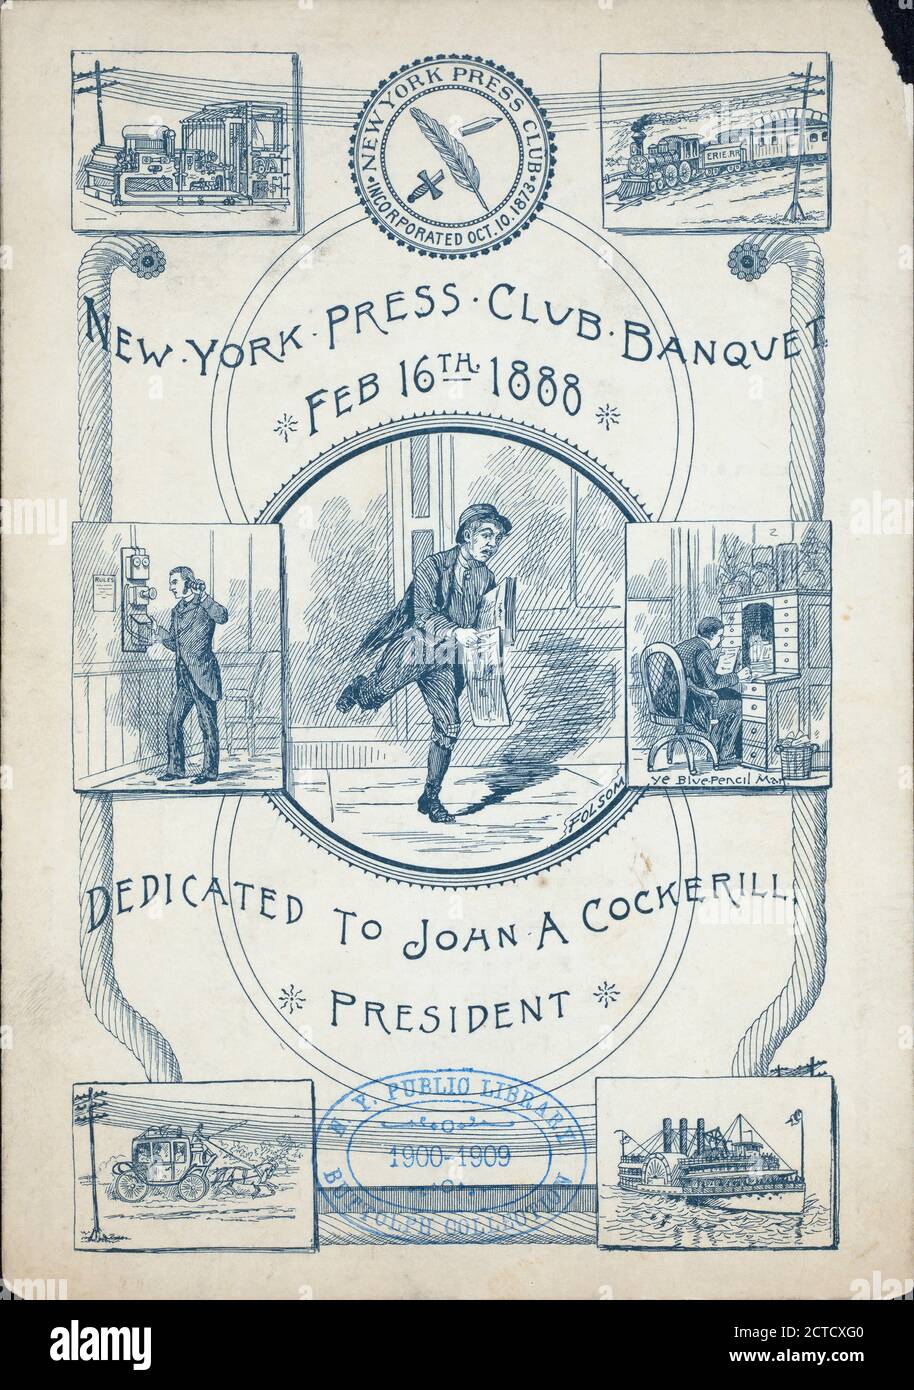 BANQUET DÉDIÉ À JOHN A. COCKERILL, PRÉSIDENT tenu par LE CLUB DE PRESSE DE NEW YORK à DELMONICO'S (CHAUD;), image fixe, menus, 1888 Banque D'Images